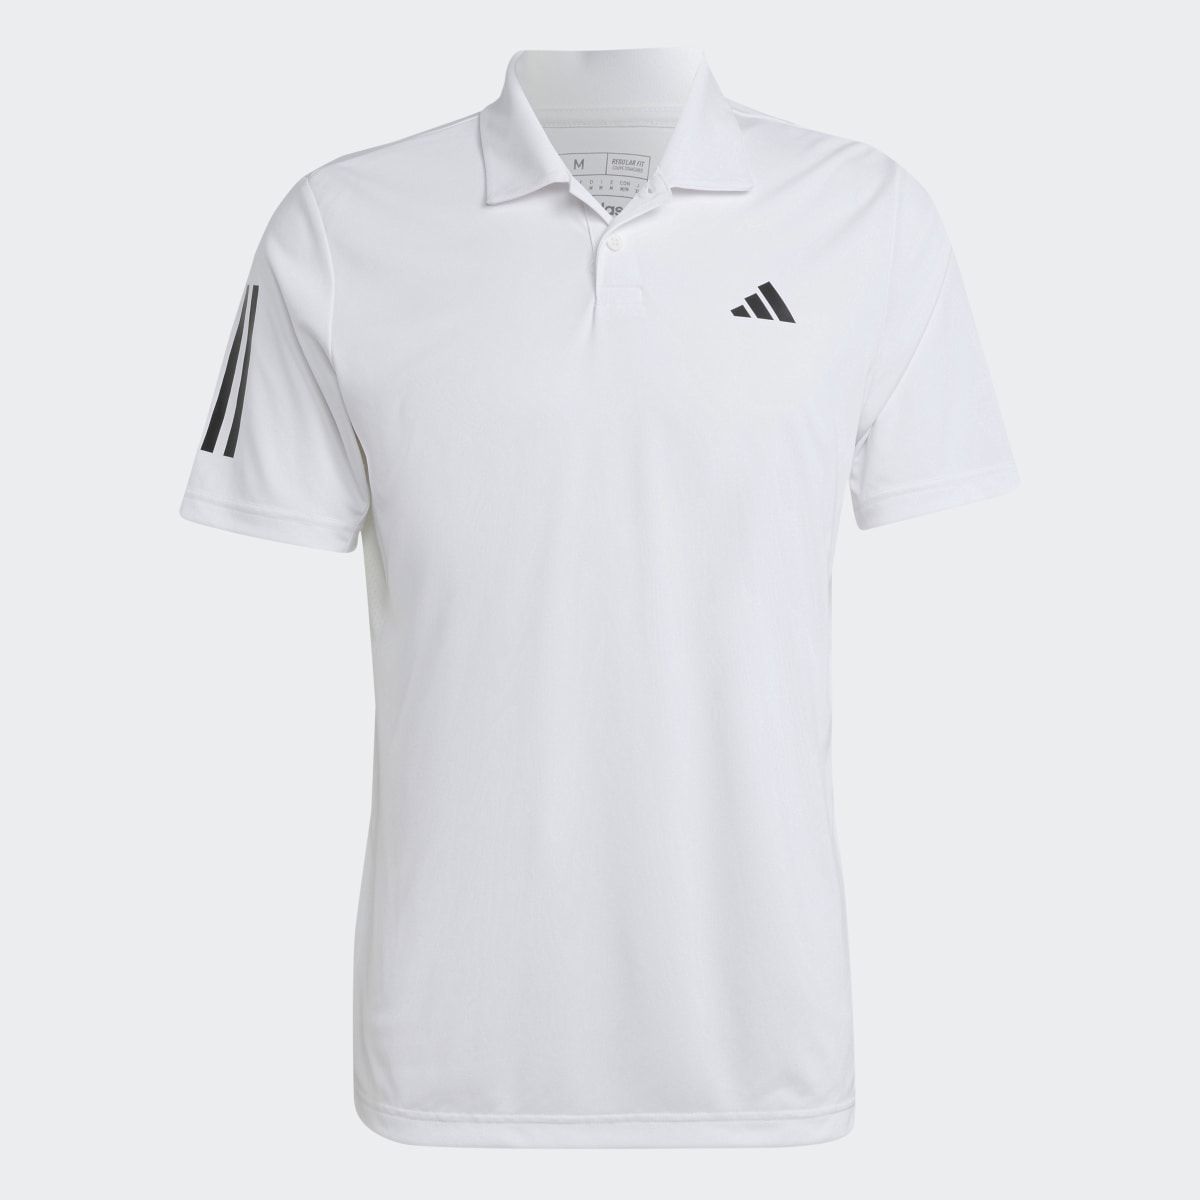 Adidas Polo Club 3-Stripes Tennis. 5